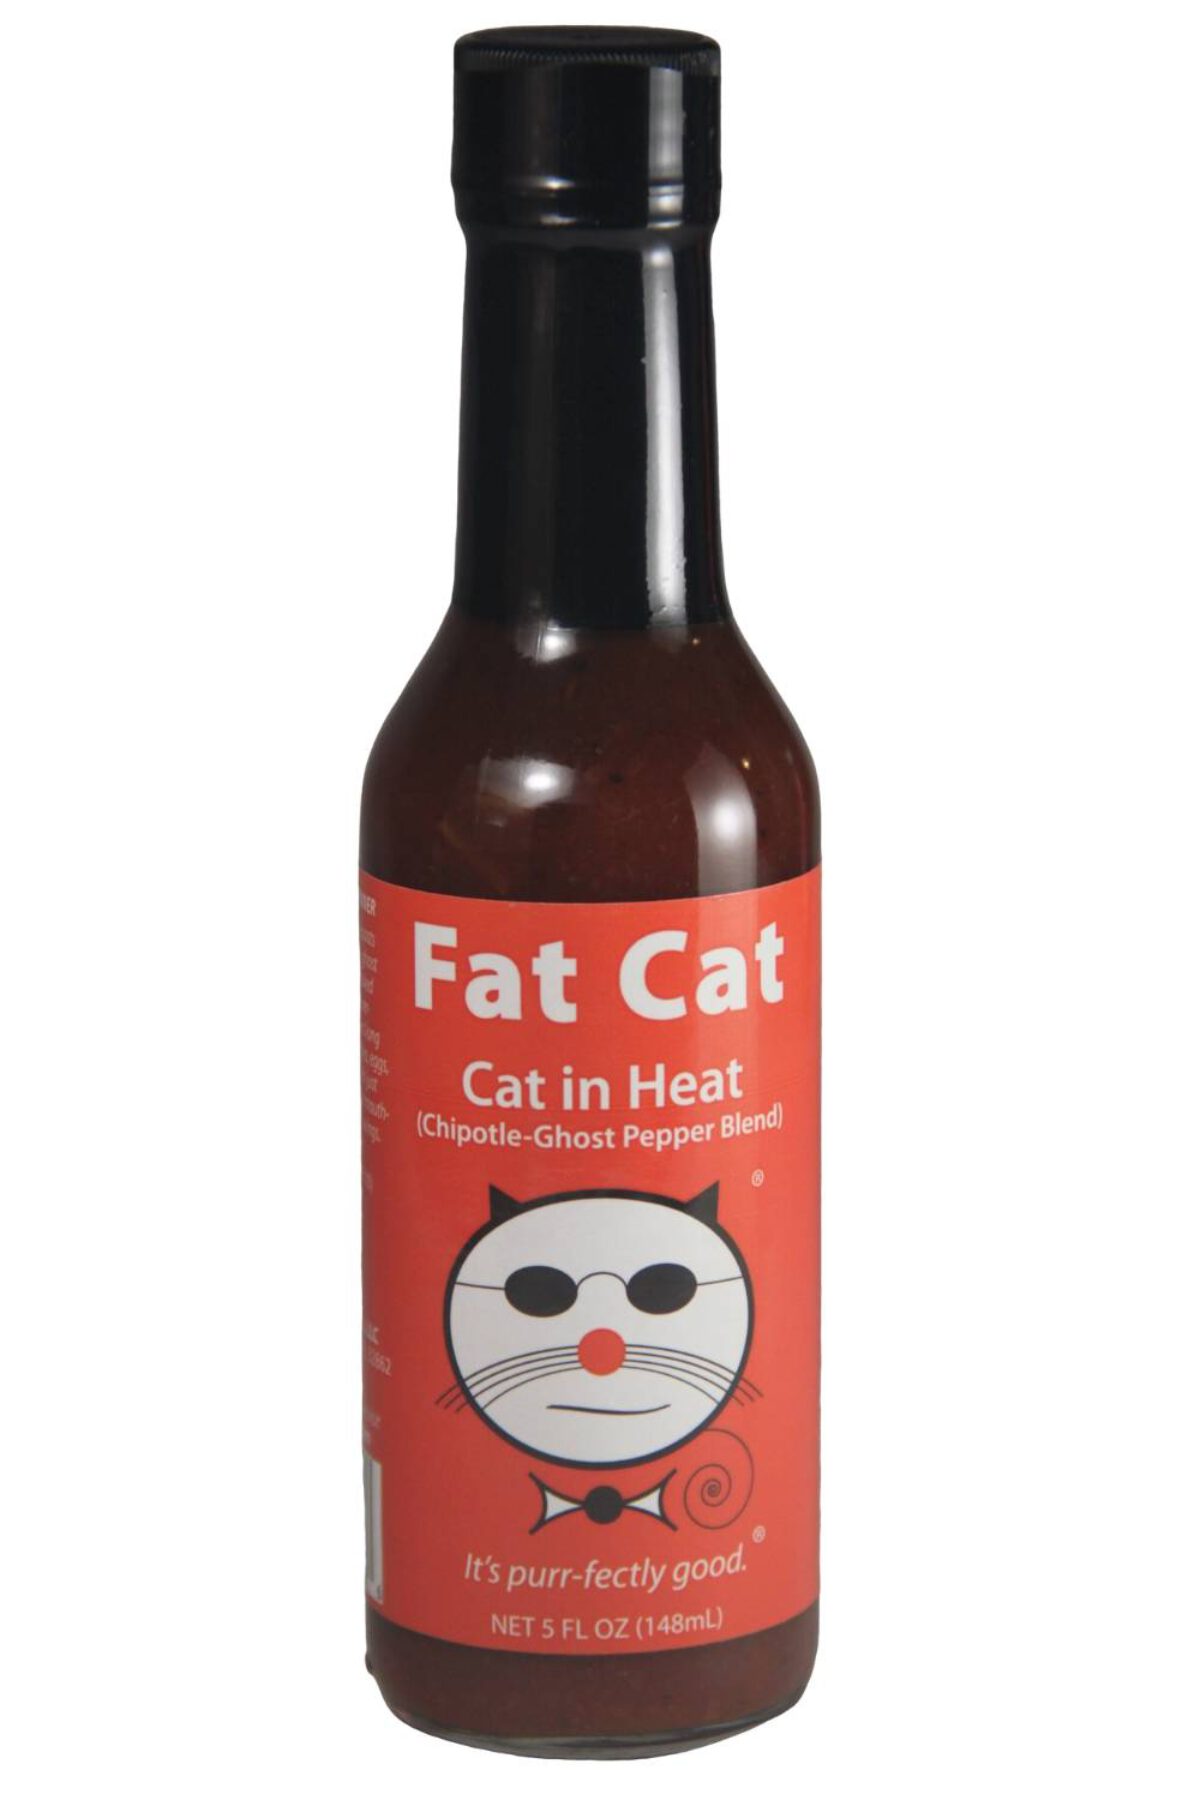 Fat-Cat-Cat-in-Heat-Hot-Sauce-e1565948502888-1200x1800.jpg